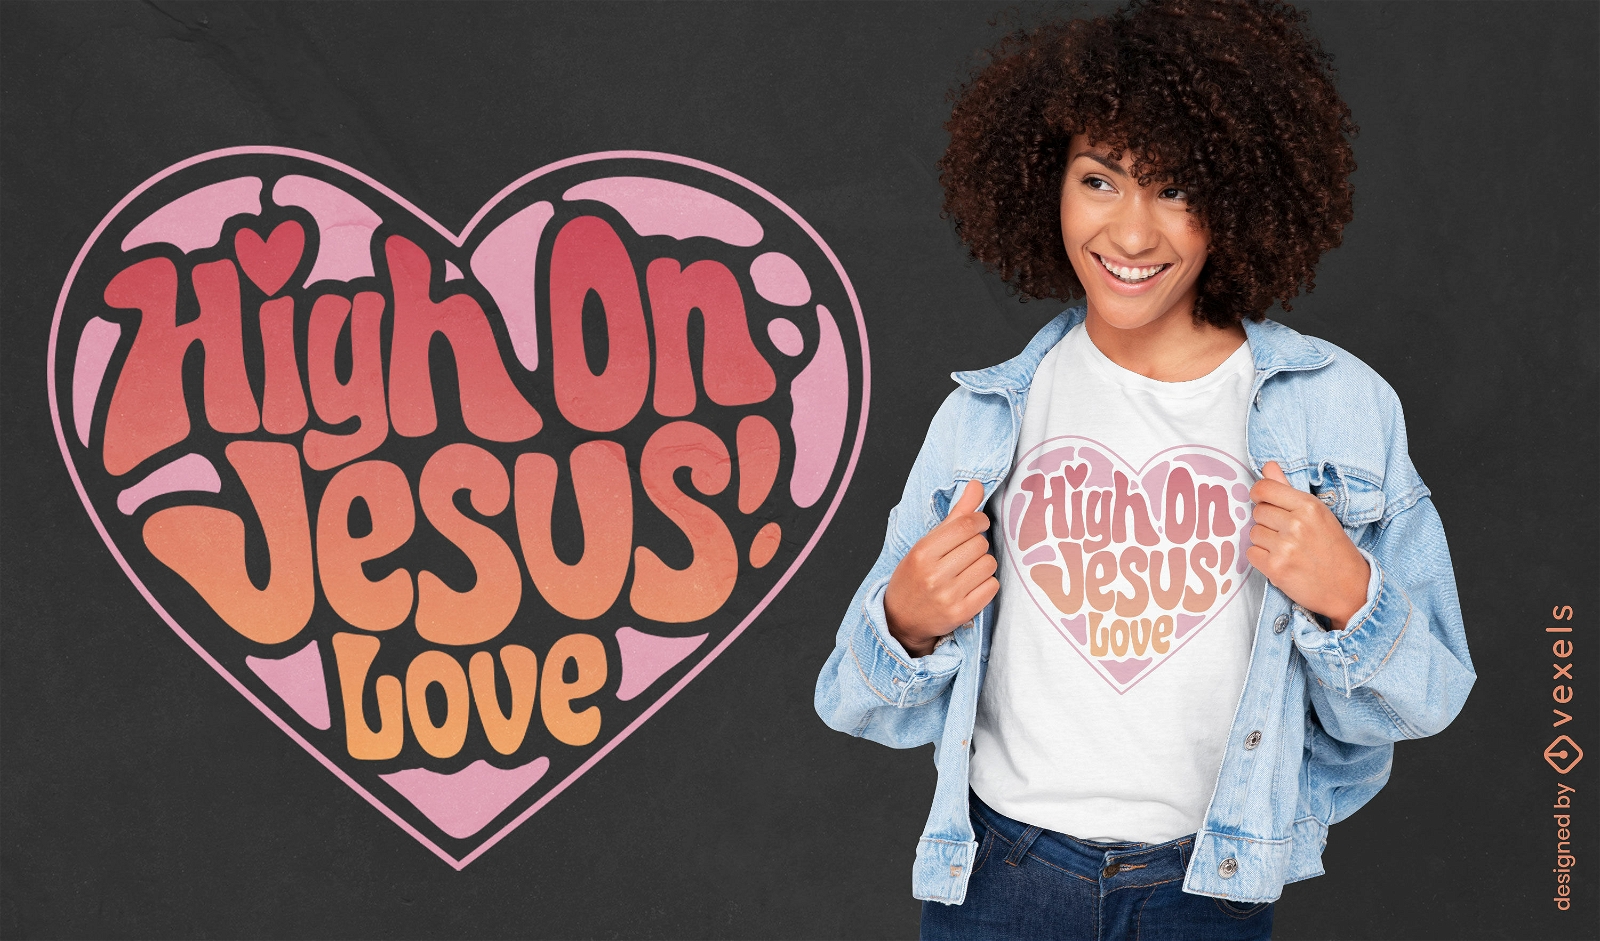 Hoch auf Jesus Liebe Herz T-Shirt Design